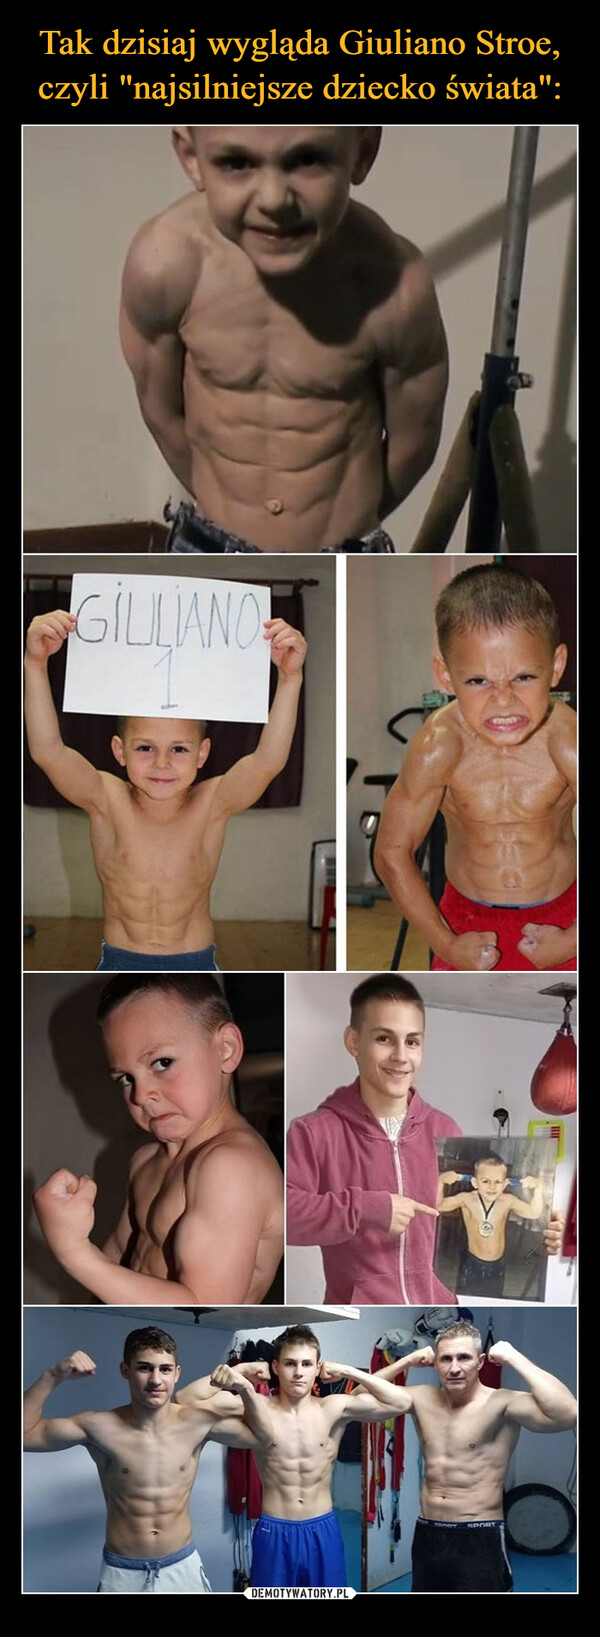 Tak dzisiaj wygląda Giuliano Stroe, czyli "najsilniejsze dziecko świata":